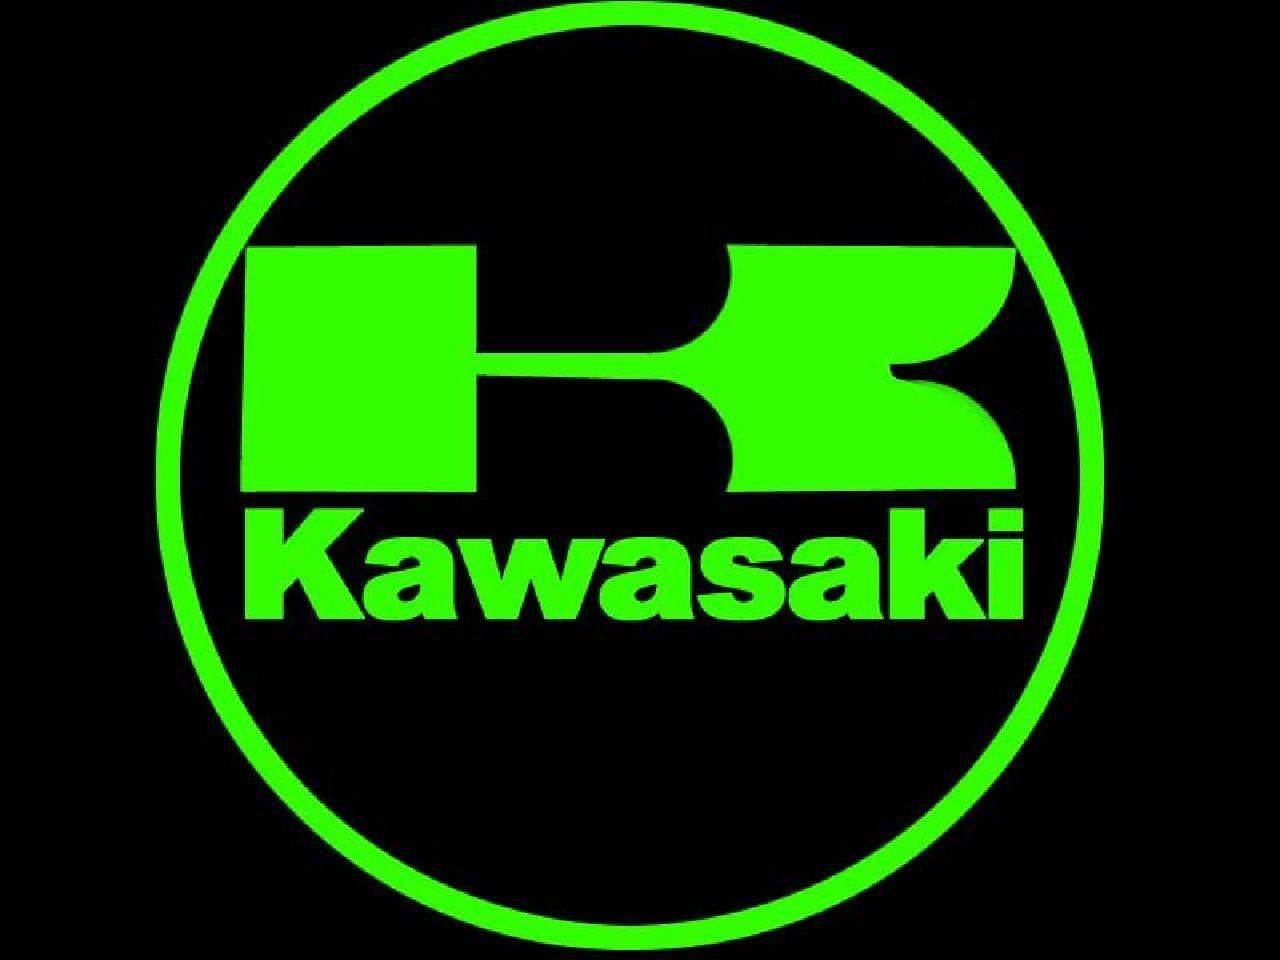 Kawasaki Wallpapers - Wallpaper Cave